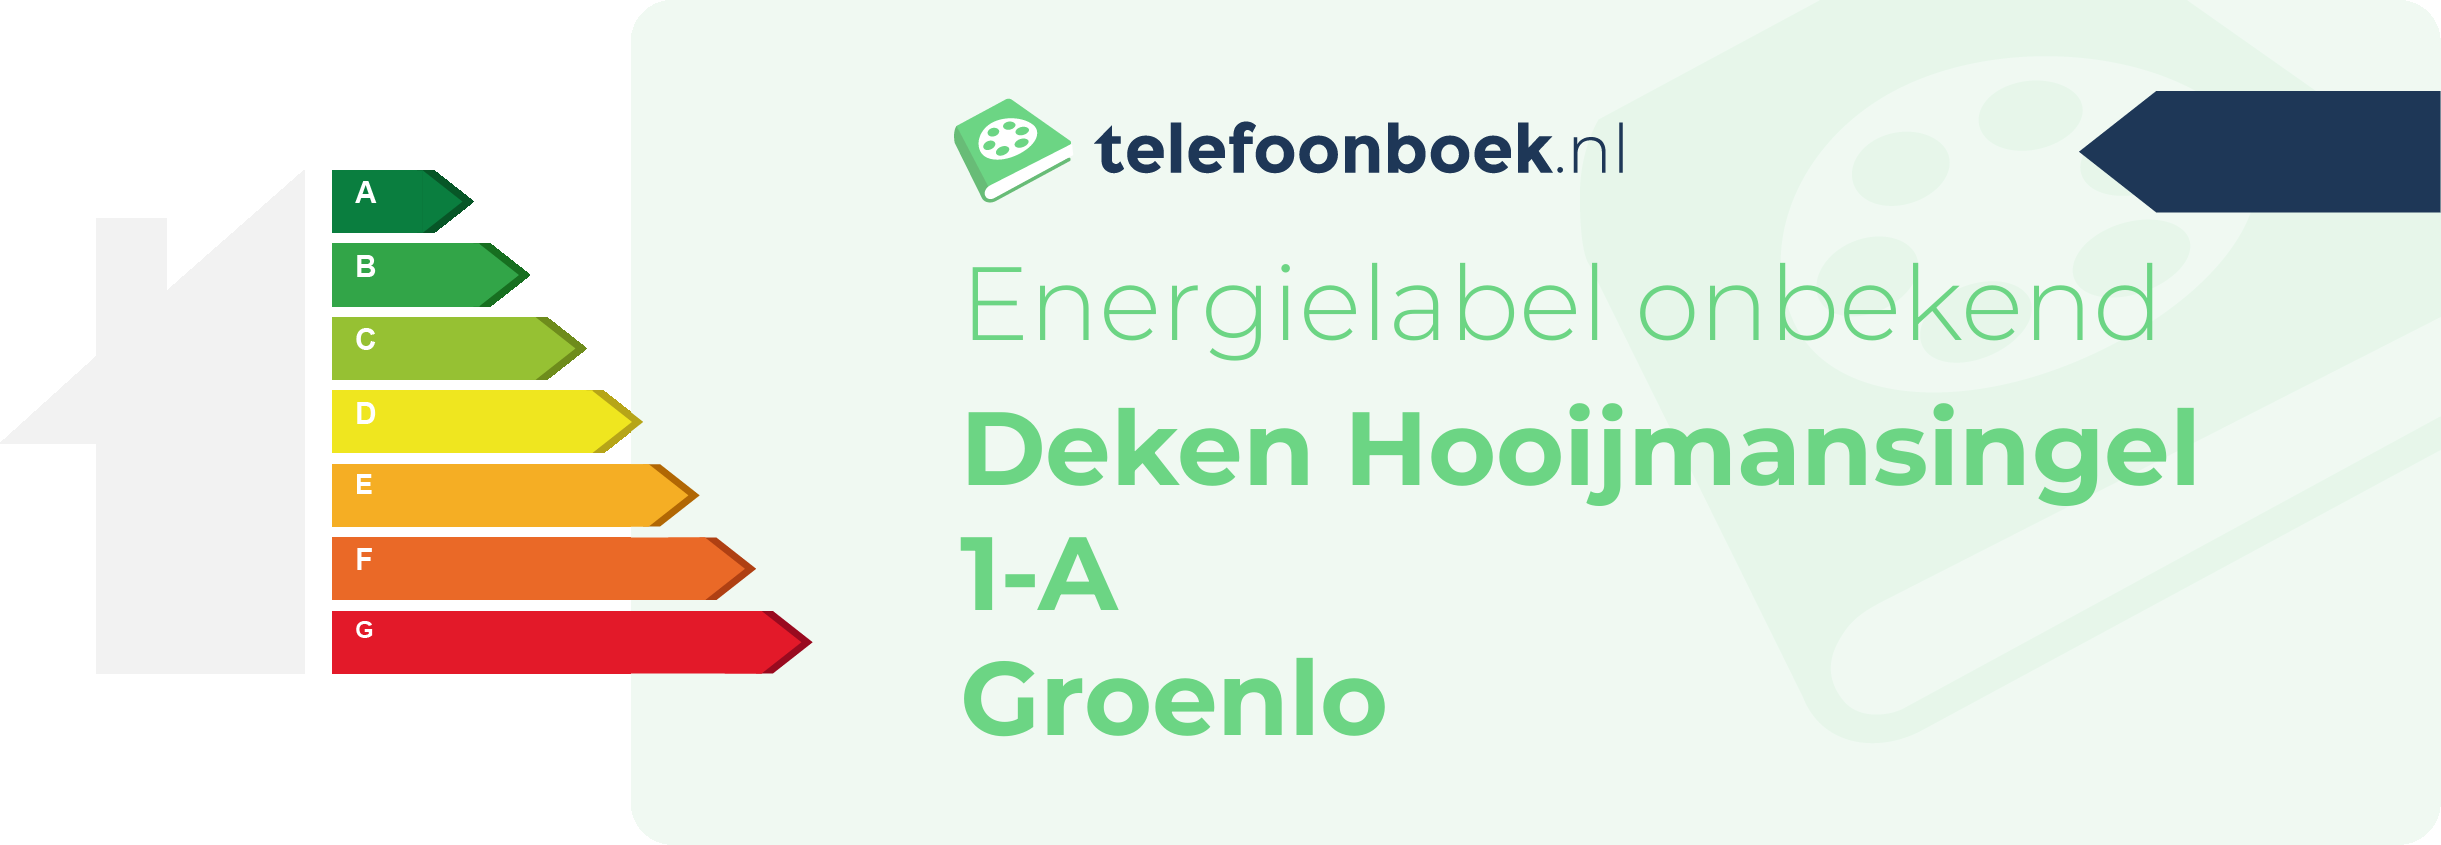 Energielabel Deken Hooijmansingel 1-A Groenlo